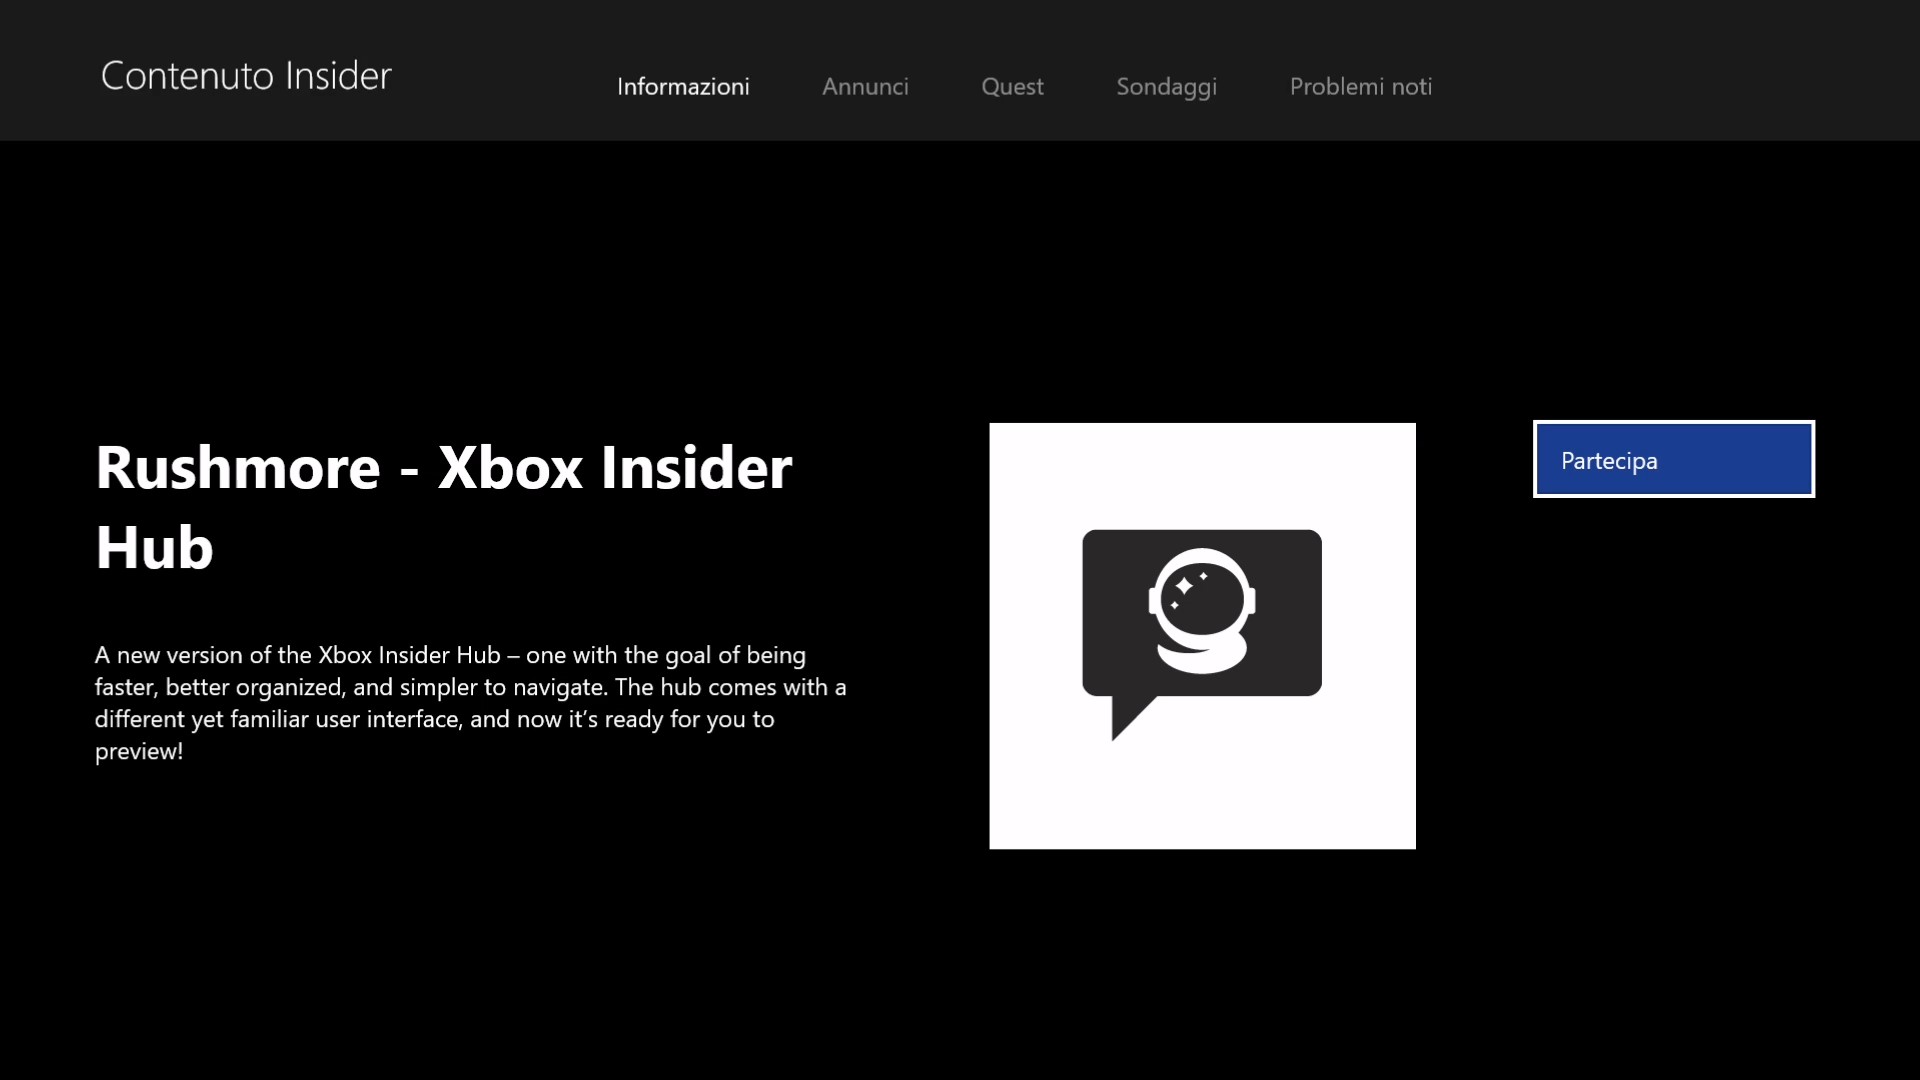 Xbox Insider Hub (Beta) ora disponibile per gli Insider su PC e console